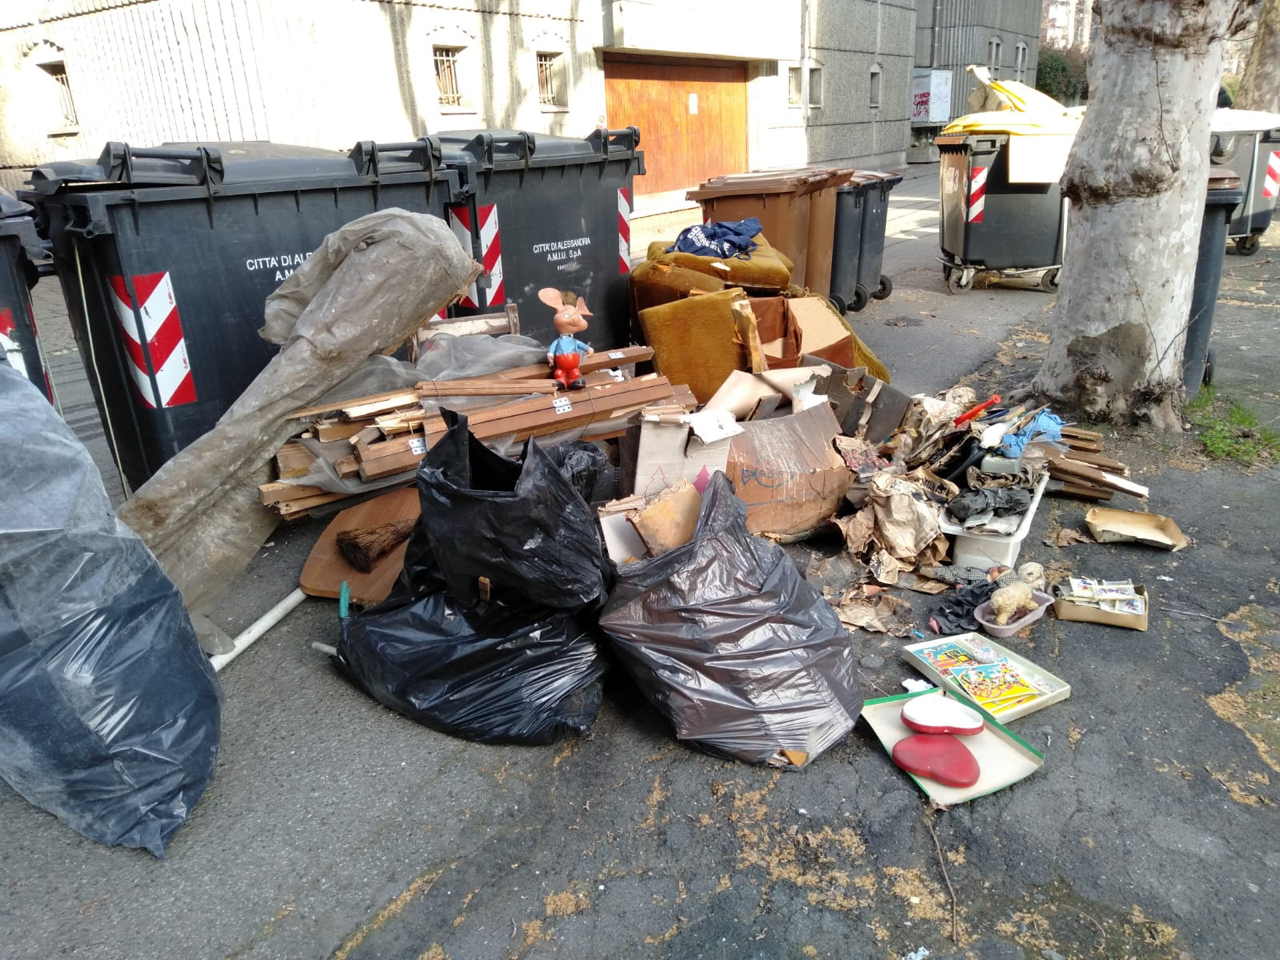 L’inciviltà non si ferma: ammasso di rifiuti fuori dai cassonetti in via Savona